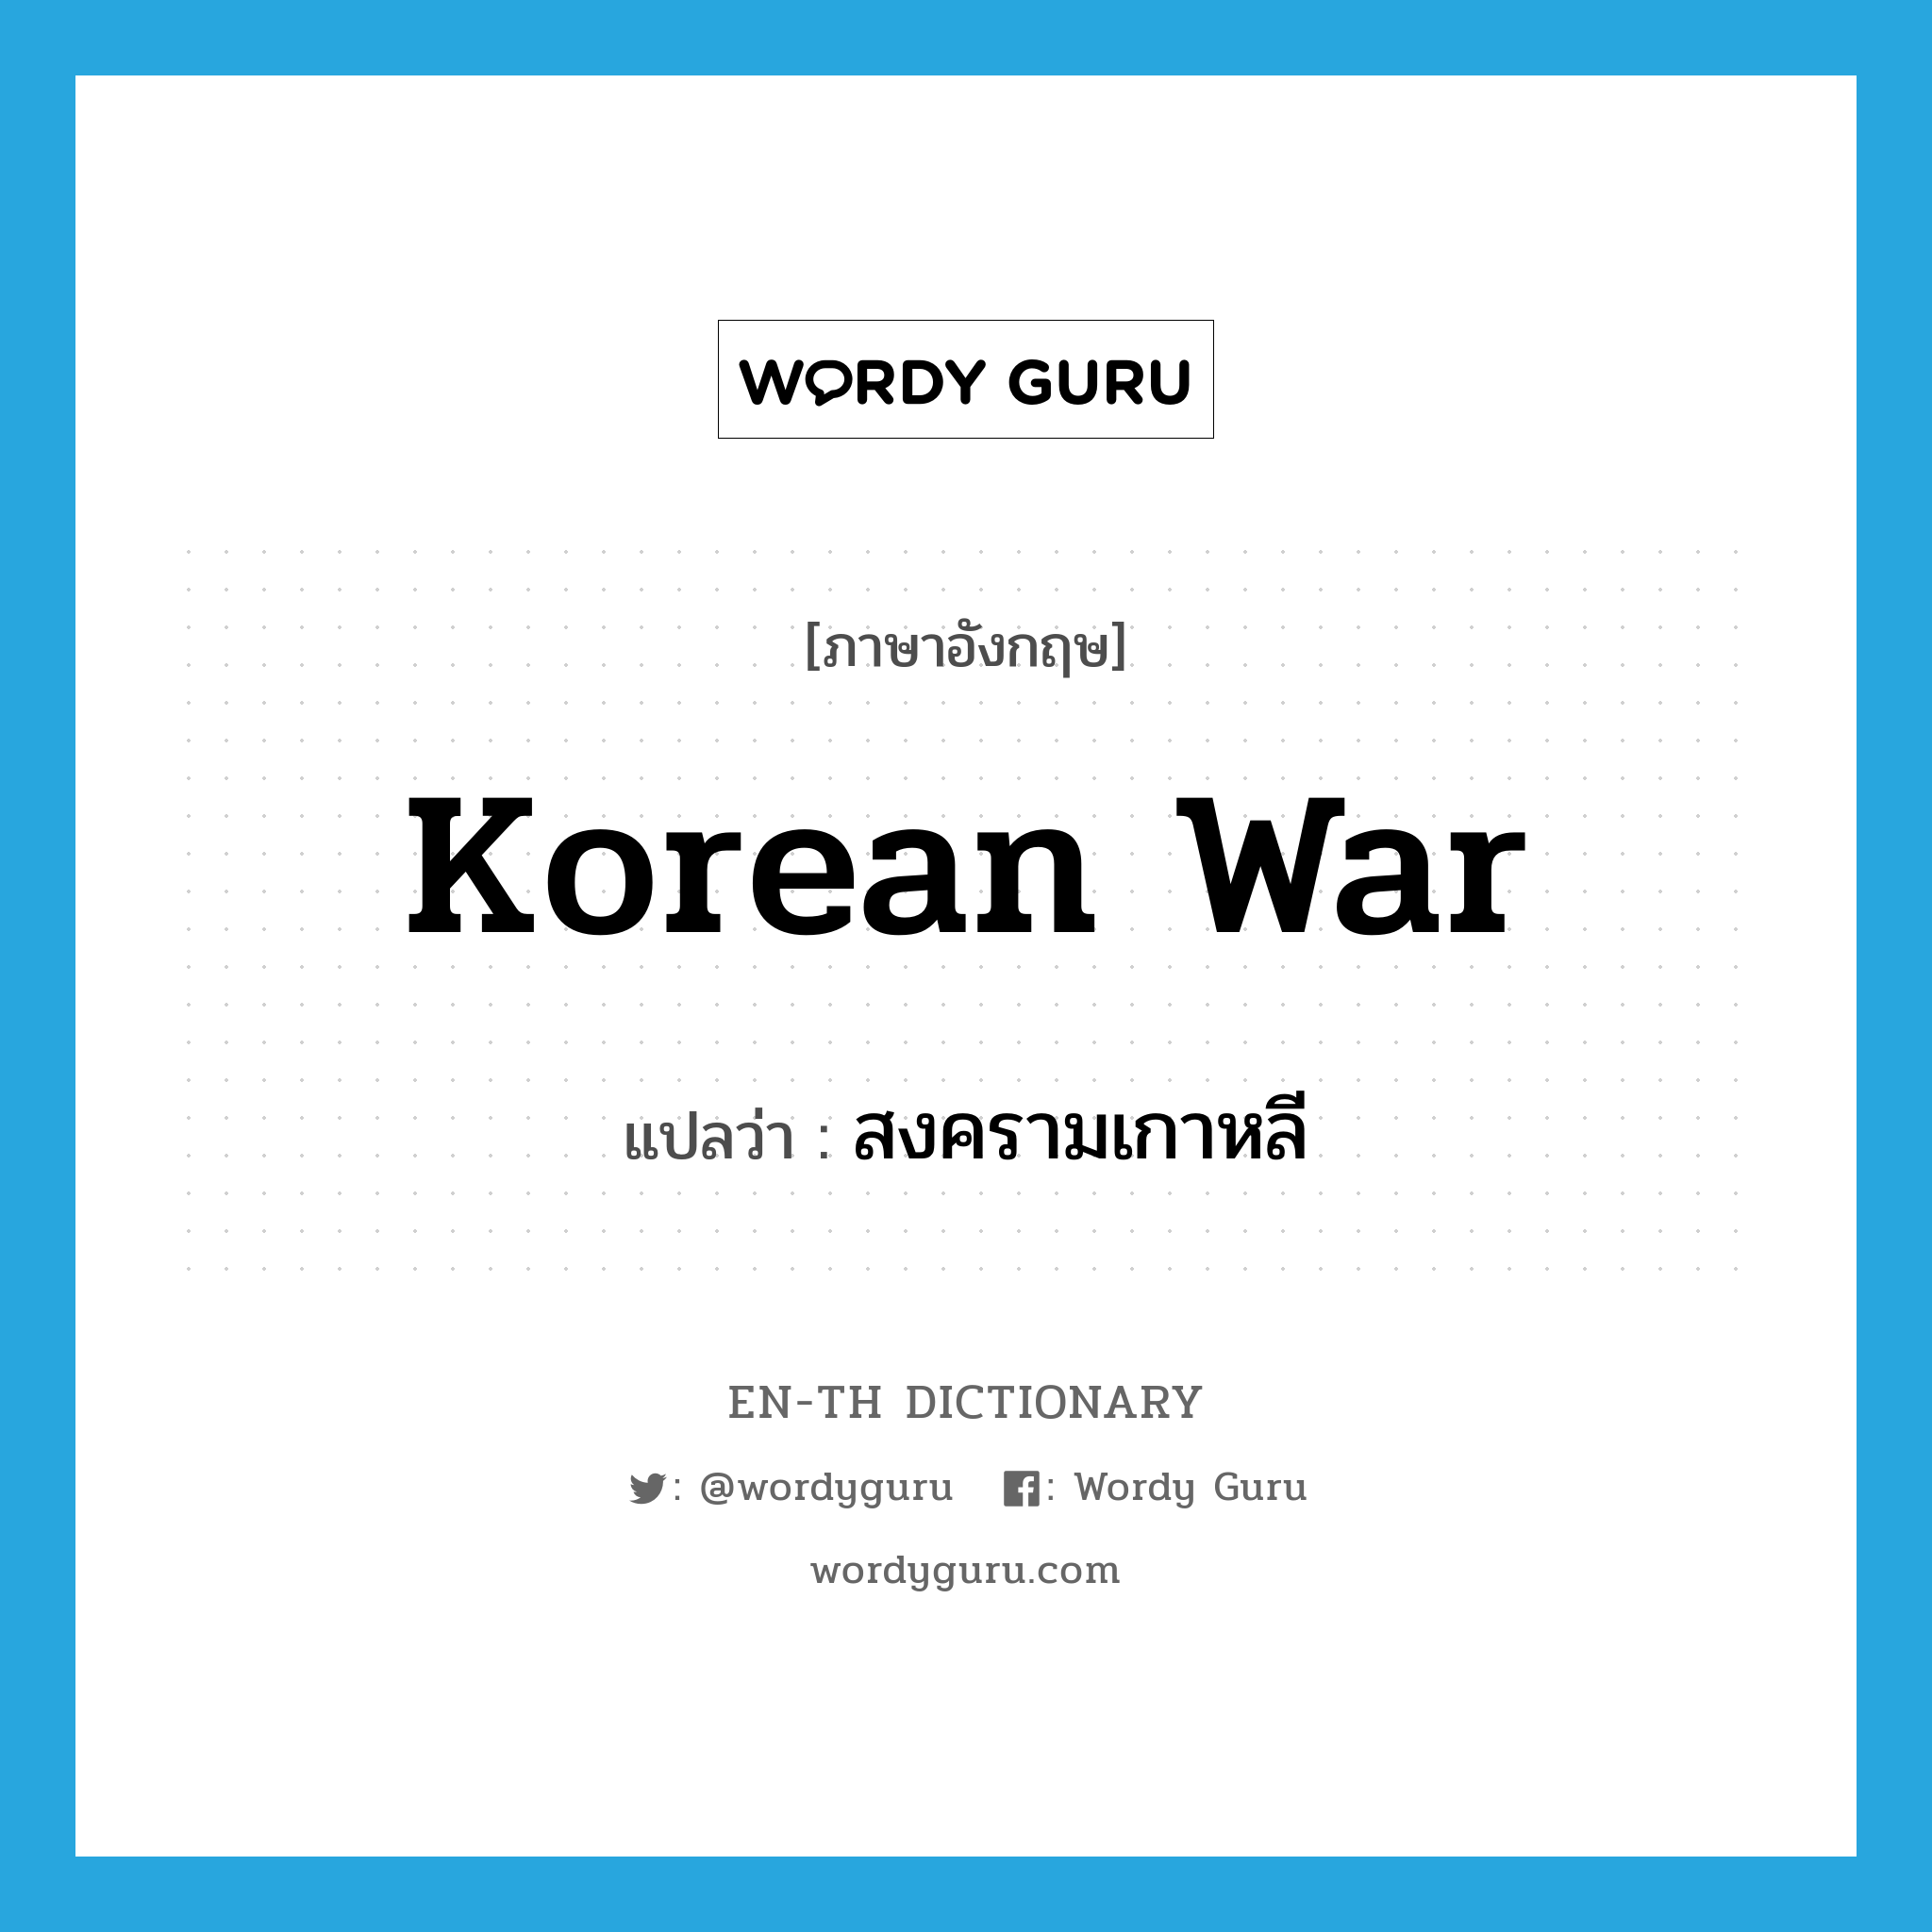 Korean War แปลว่า?, คำศัพท์ภาษาอังกฤษ Korean War แปลว่า สงครามเกาหลี ประเภท N หมวด N